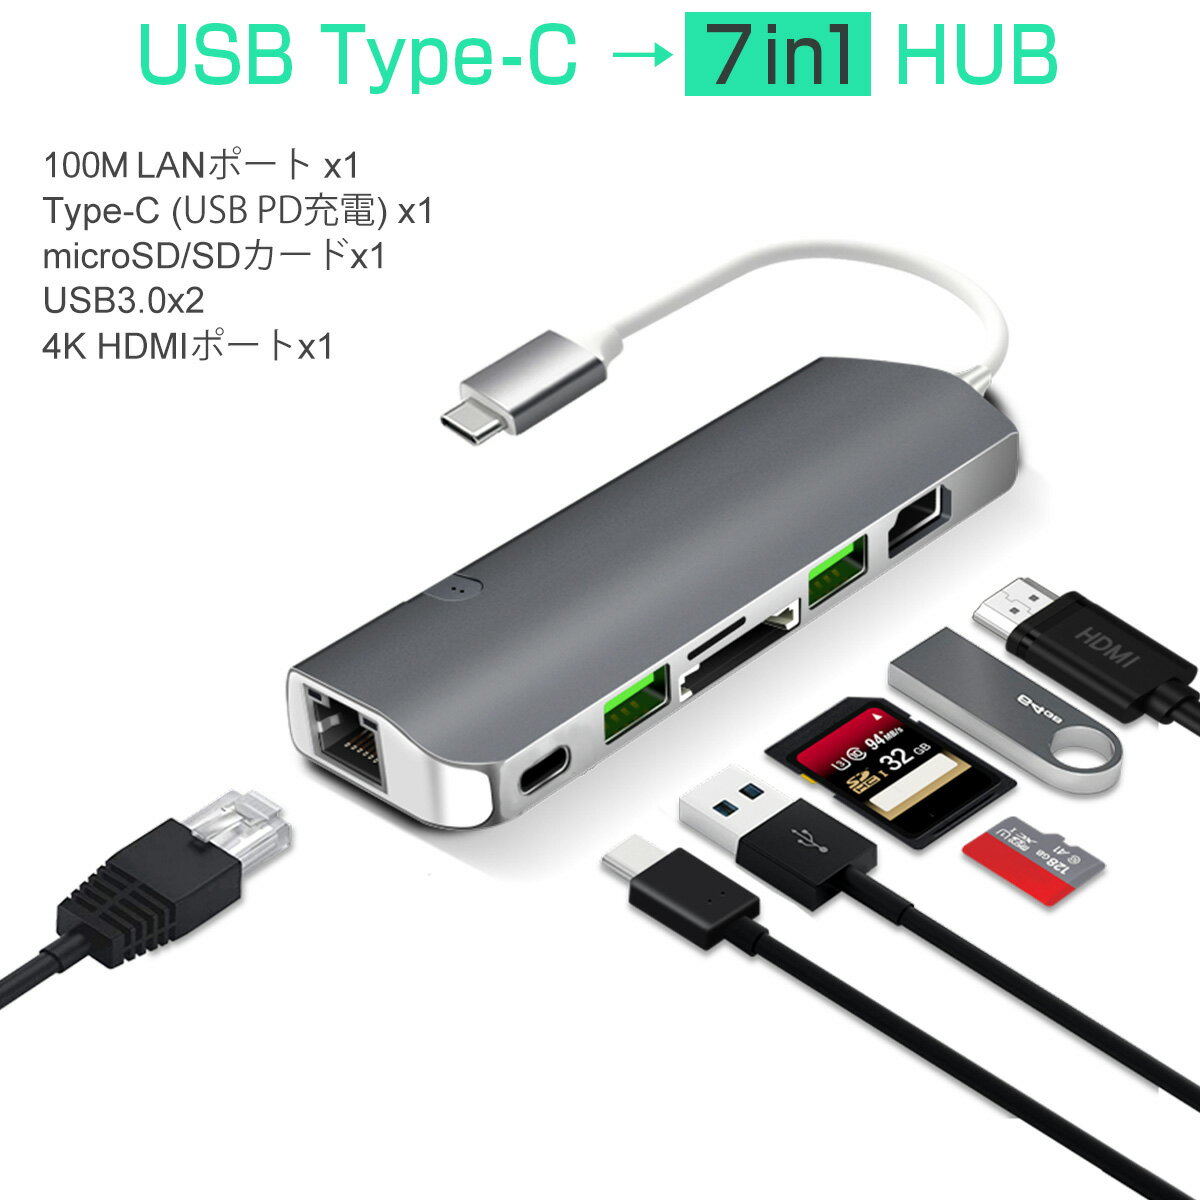 USB Type-C ハブ 7in1 USB3.0x2 4K HDMI 有線LA